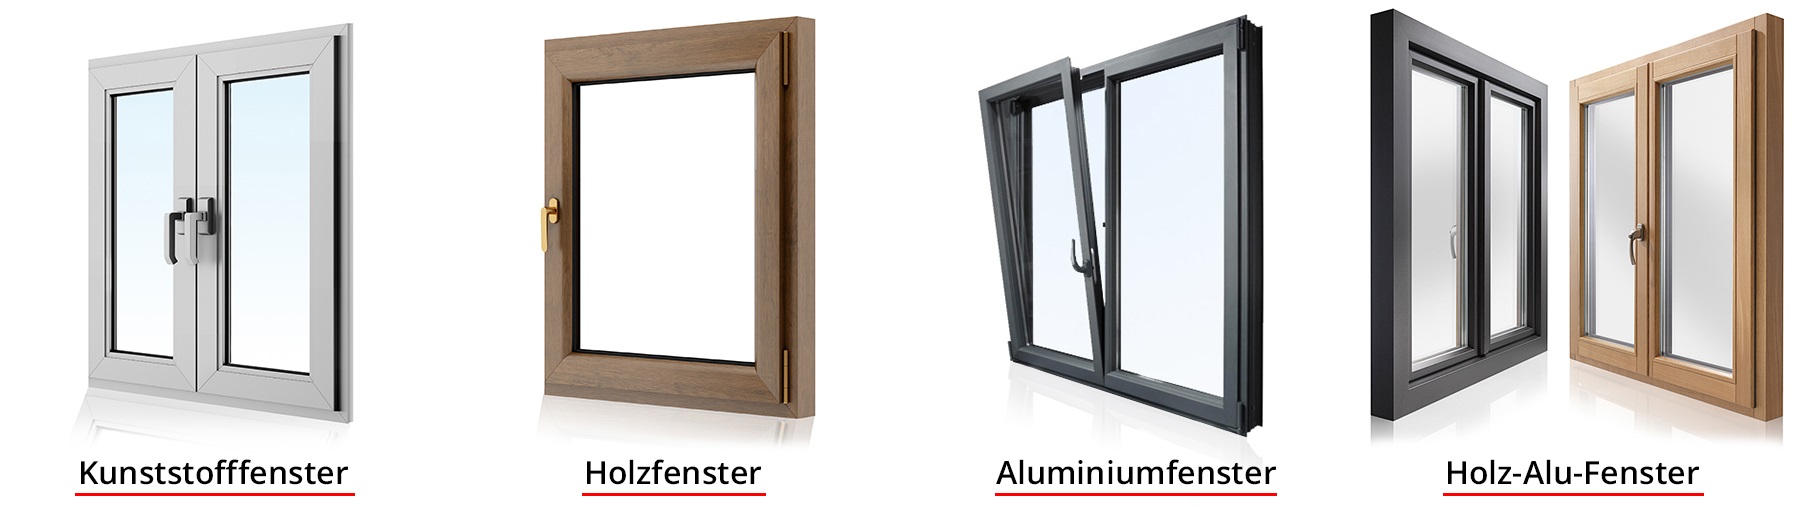 Fenstertypen - Kunstofffenster, Holzfenster, Aluminiumfenster, Holz-Alu-Fenster